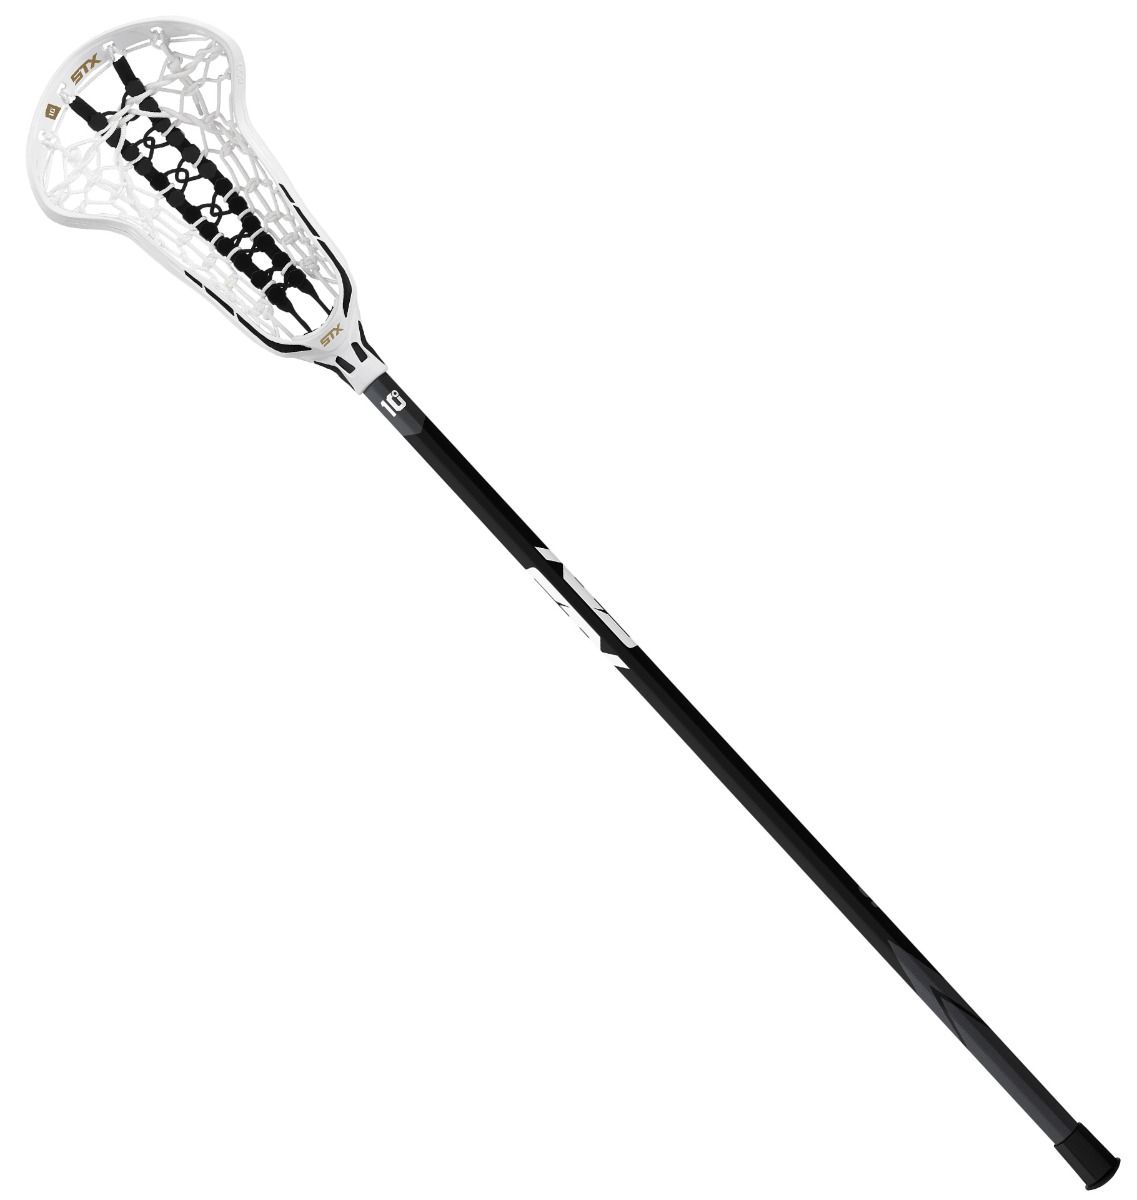 STX Exult Pro Proform Women's Complete Lacrosse Stick in White